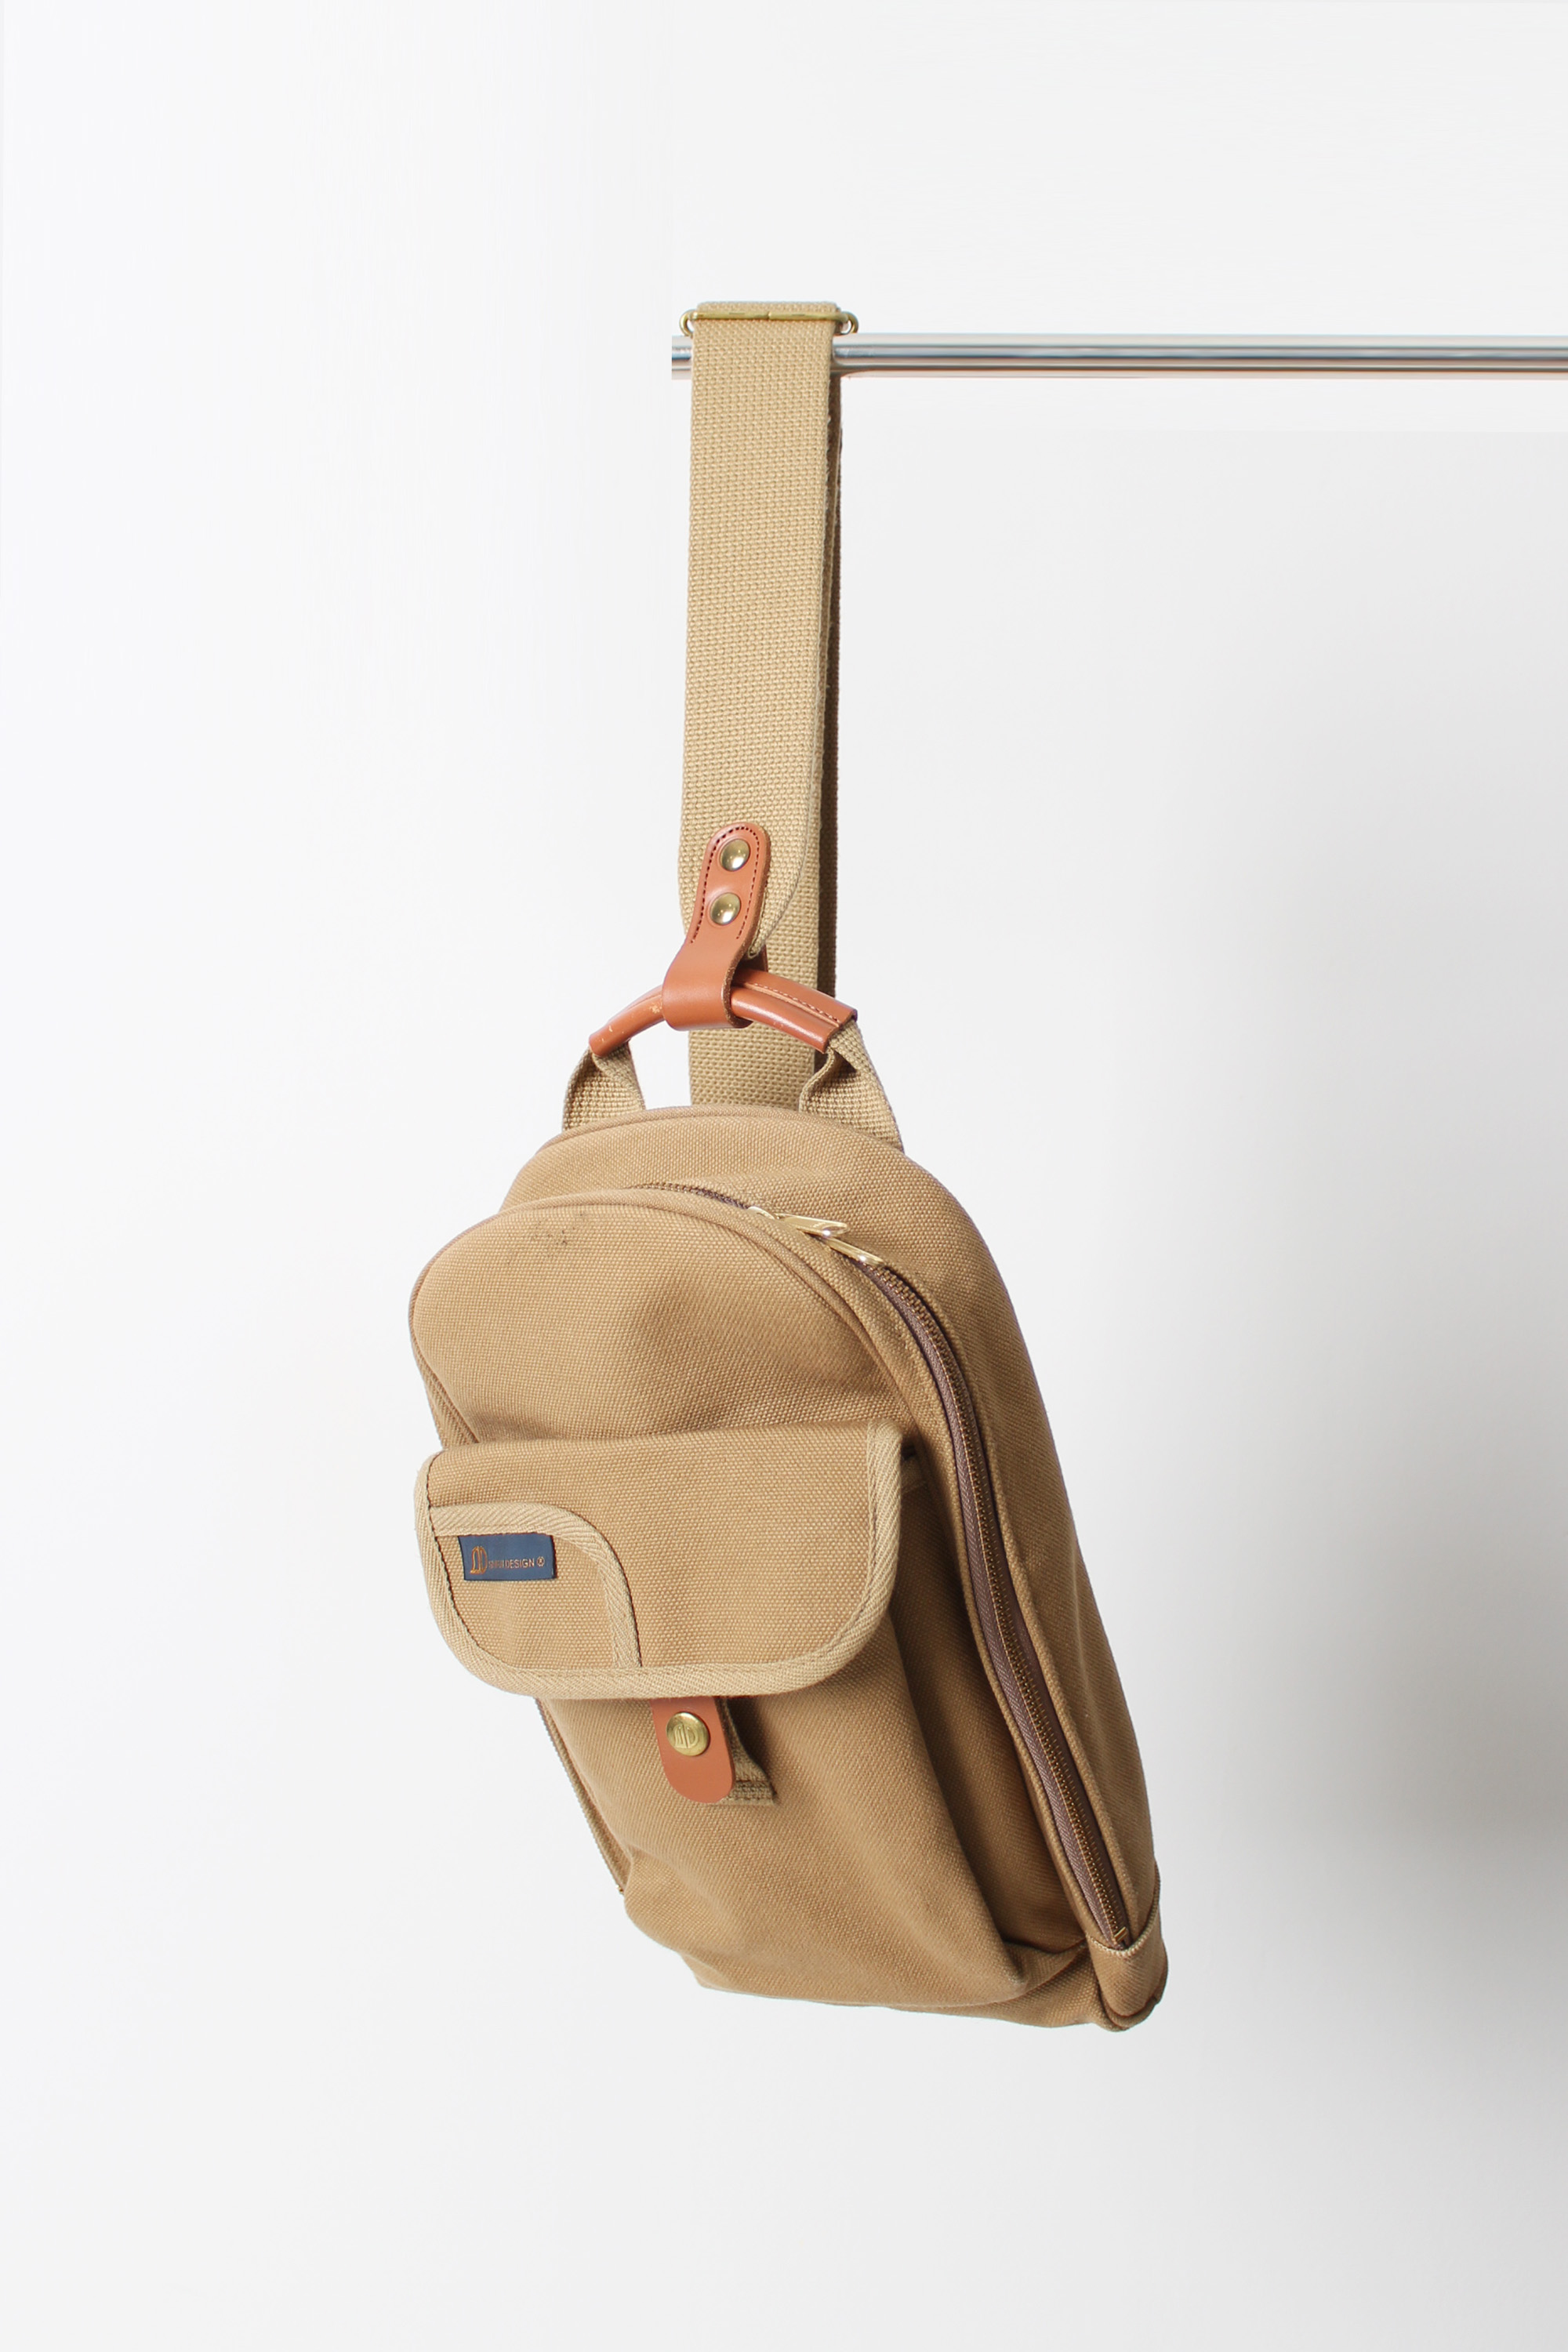 SHIRAL DESIGN sling bag